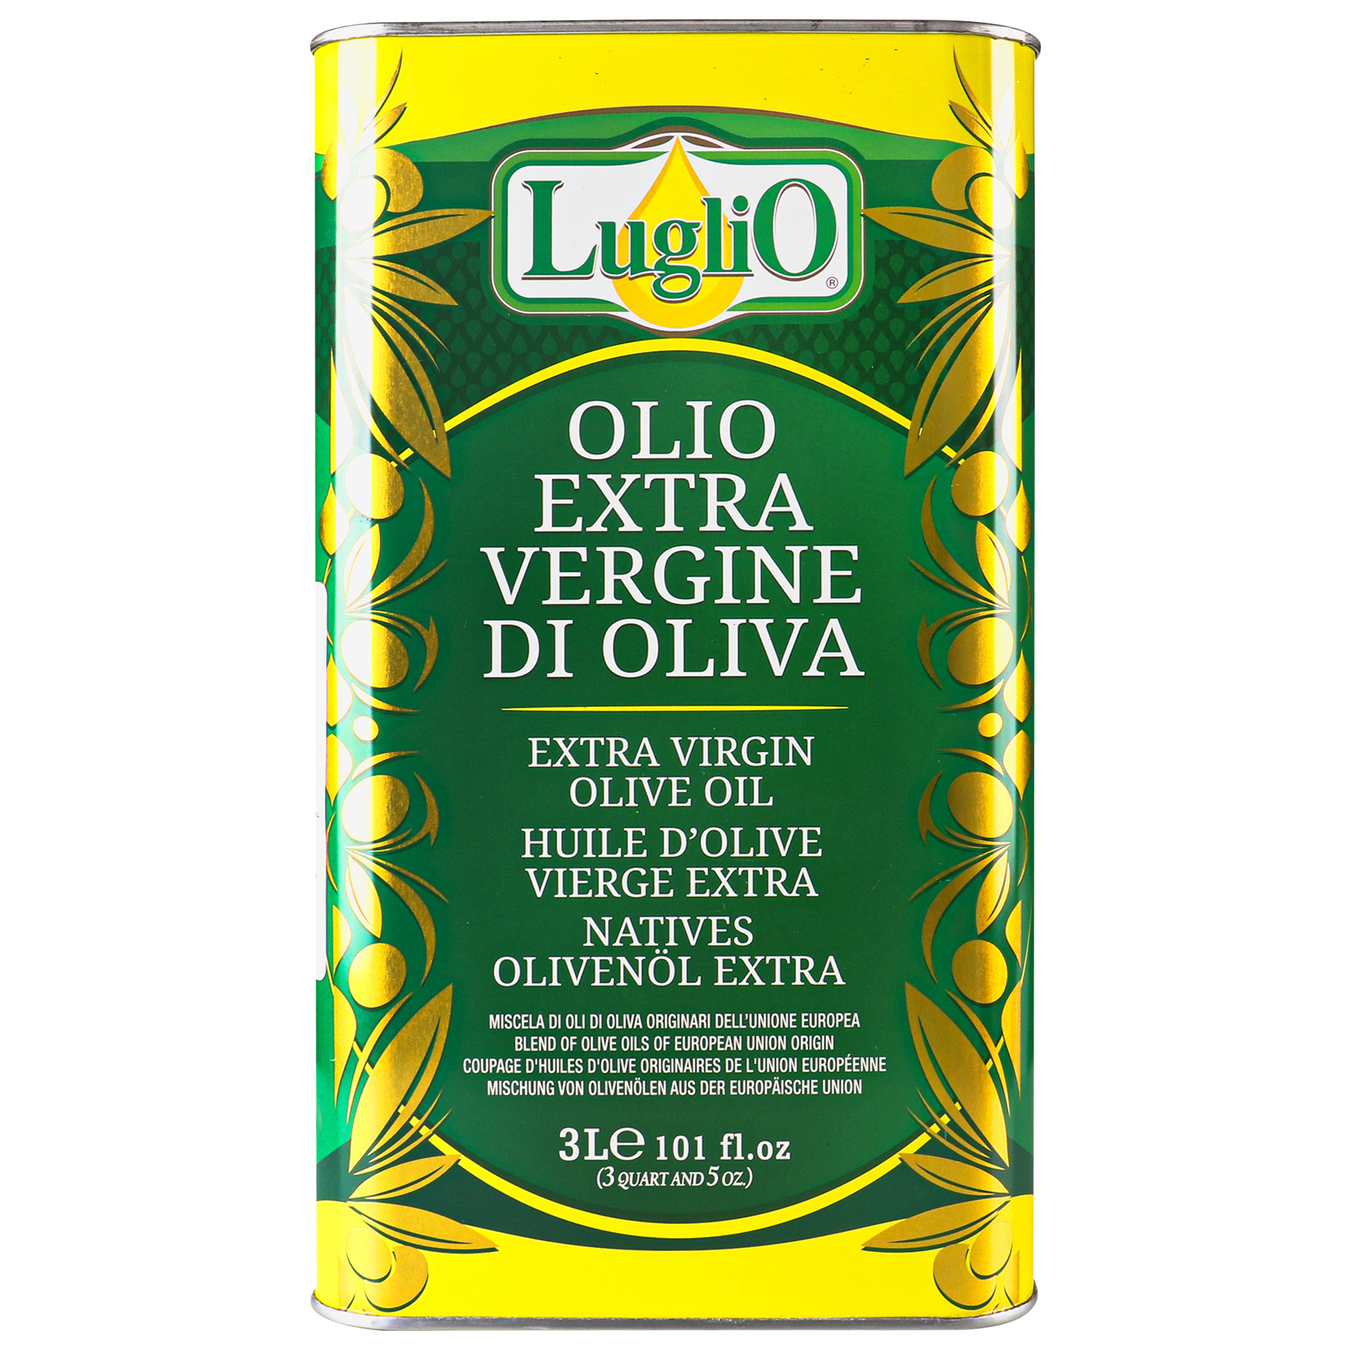 Luglio Unrefined Extra Virgin Olive Oil 3l iron can